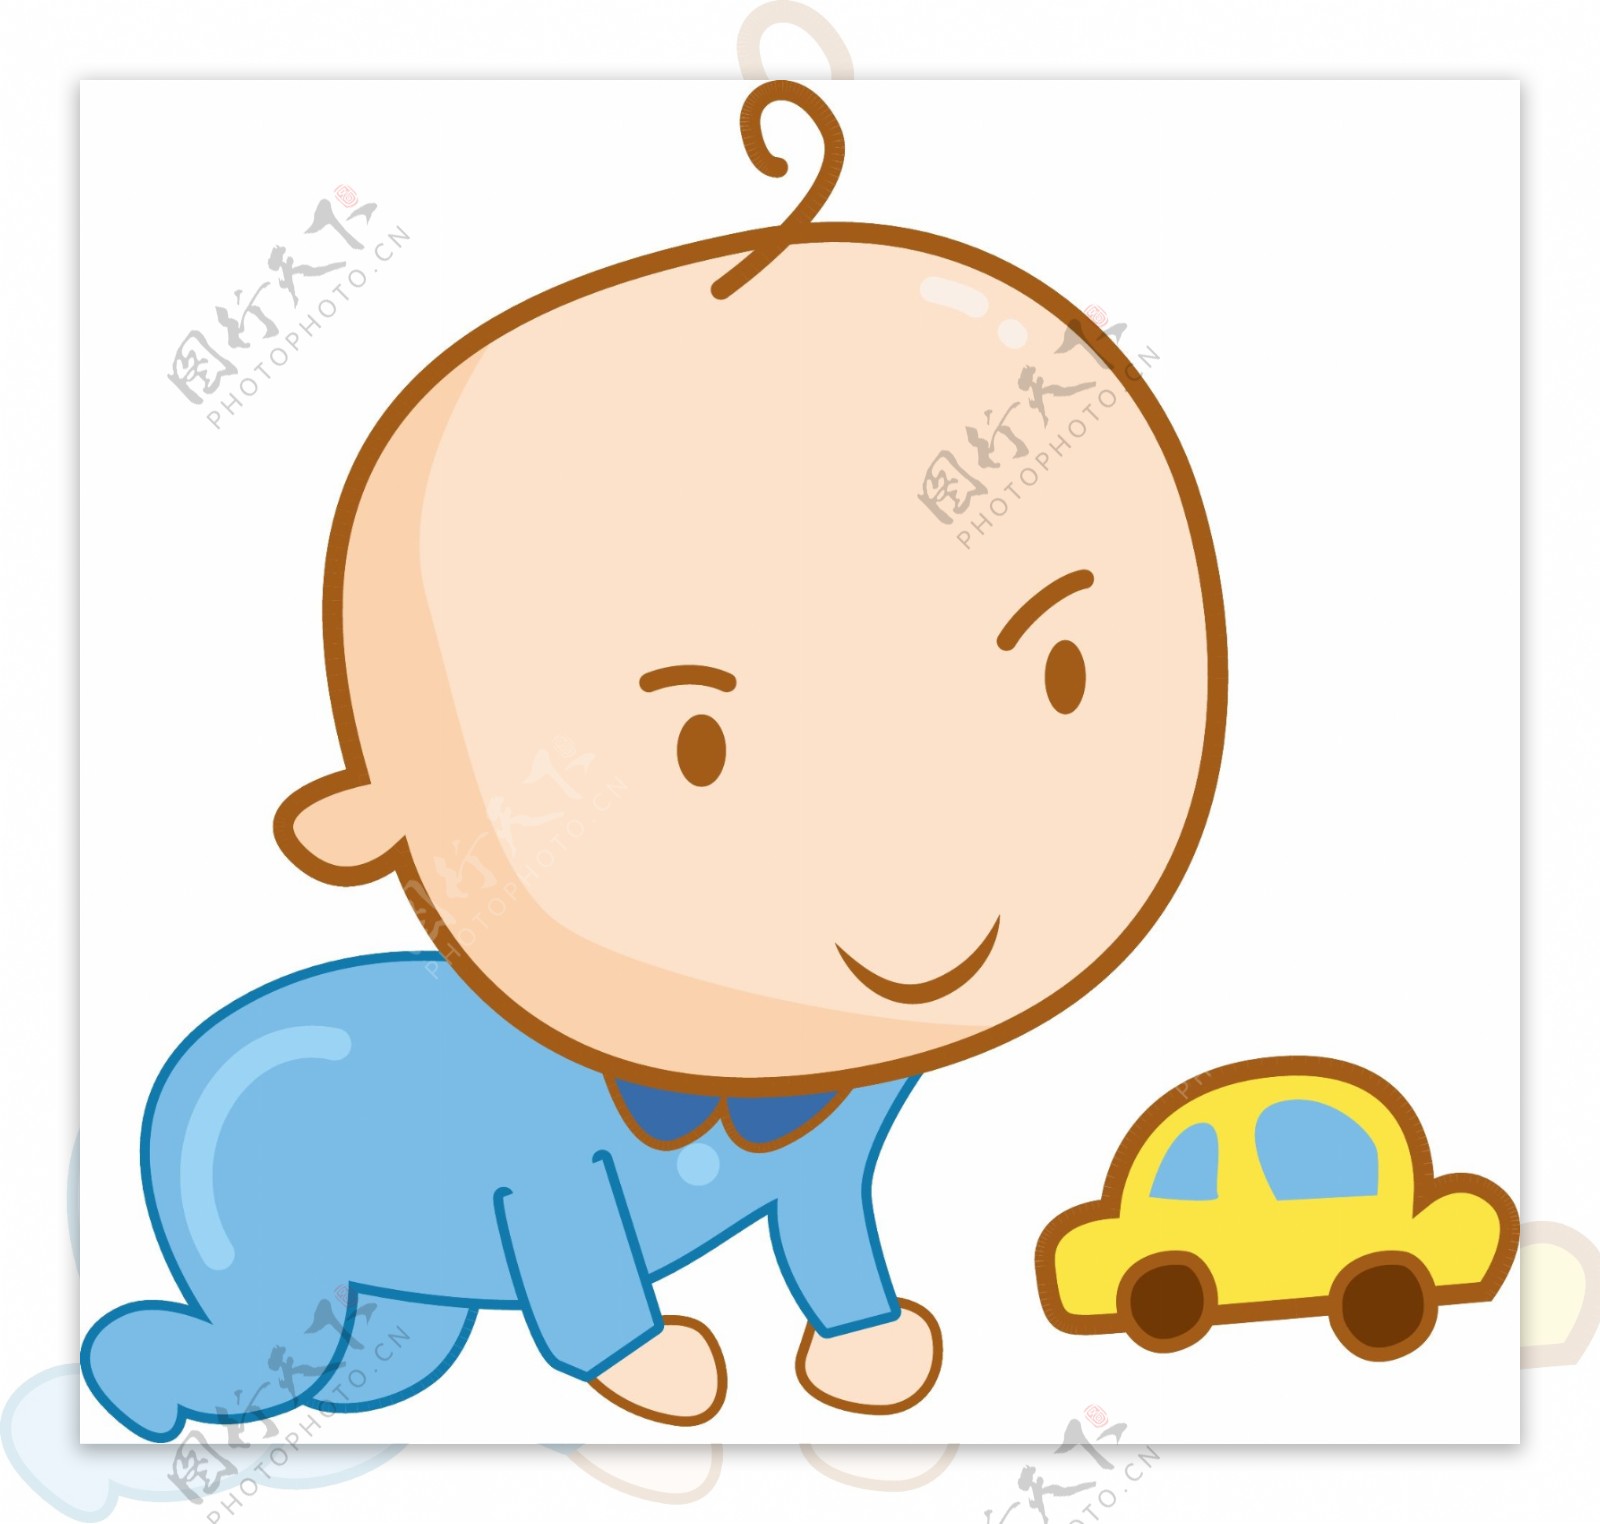 婴儿小汽车人物插画